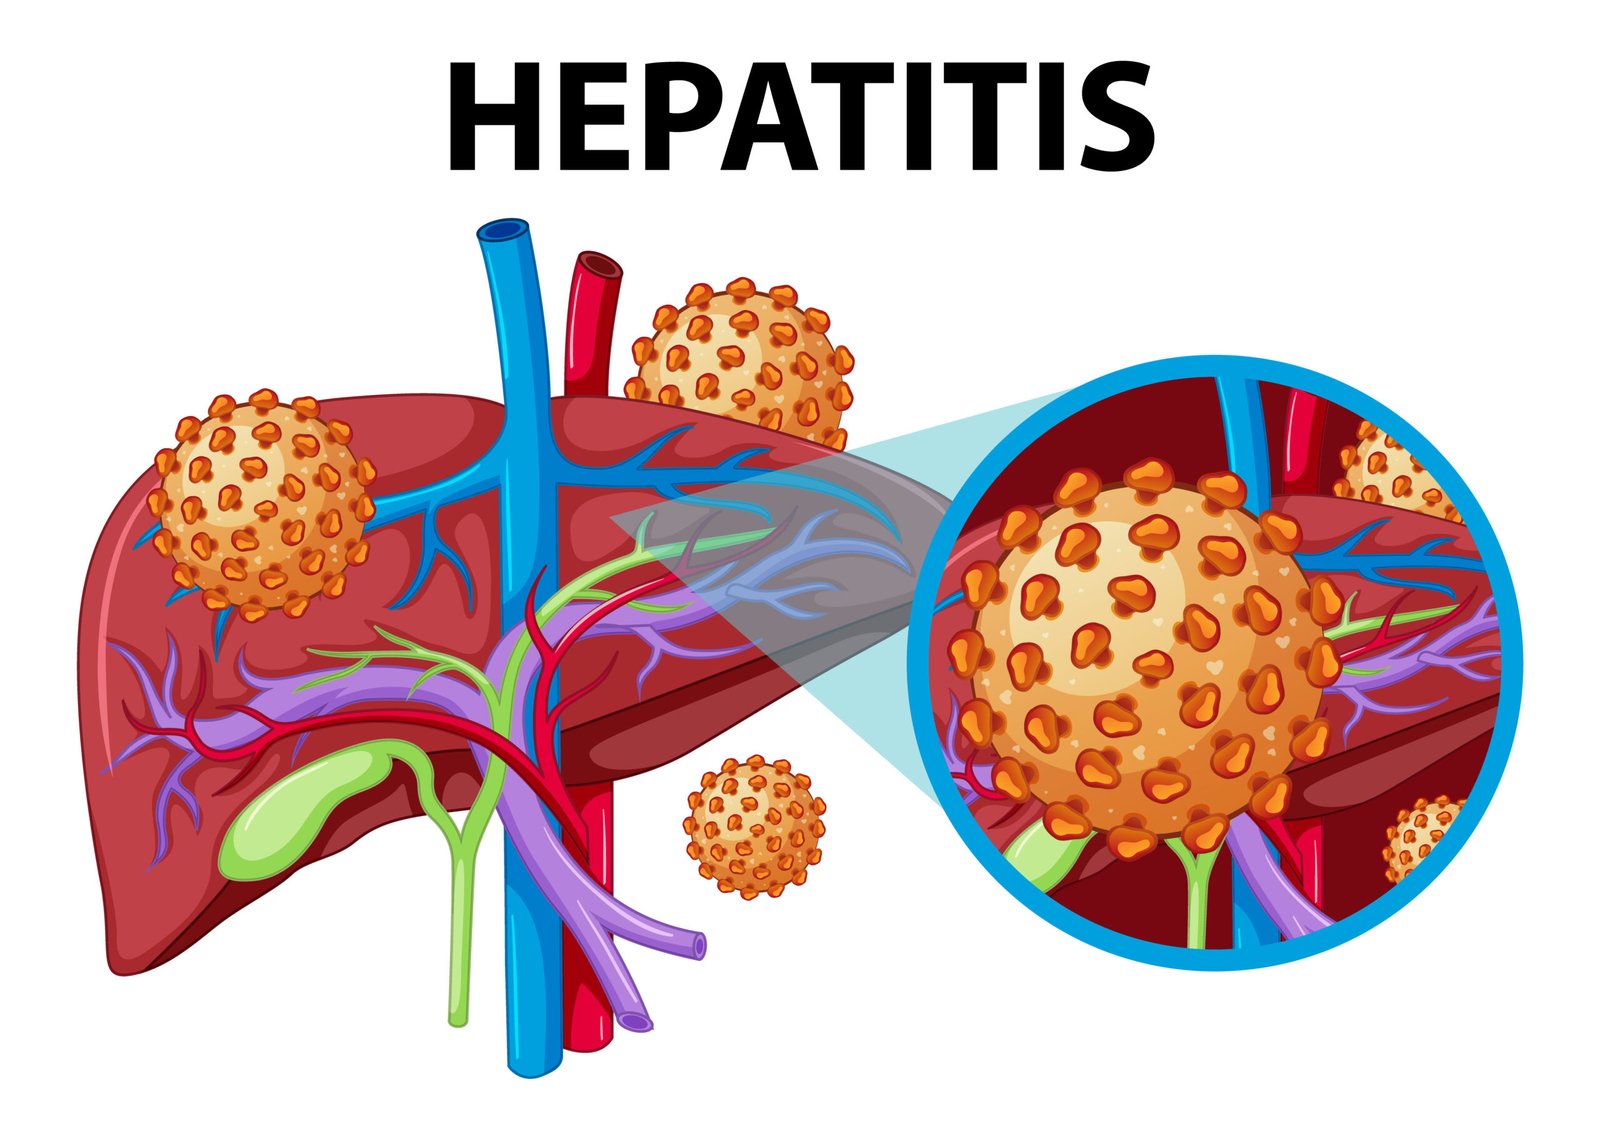 What is hepatitis